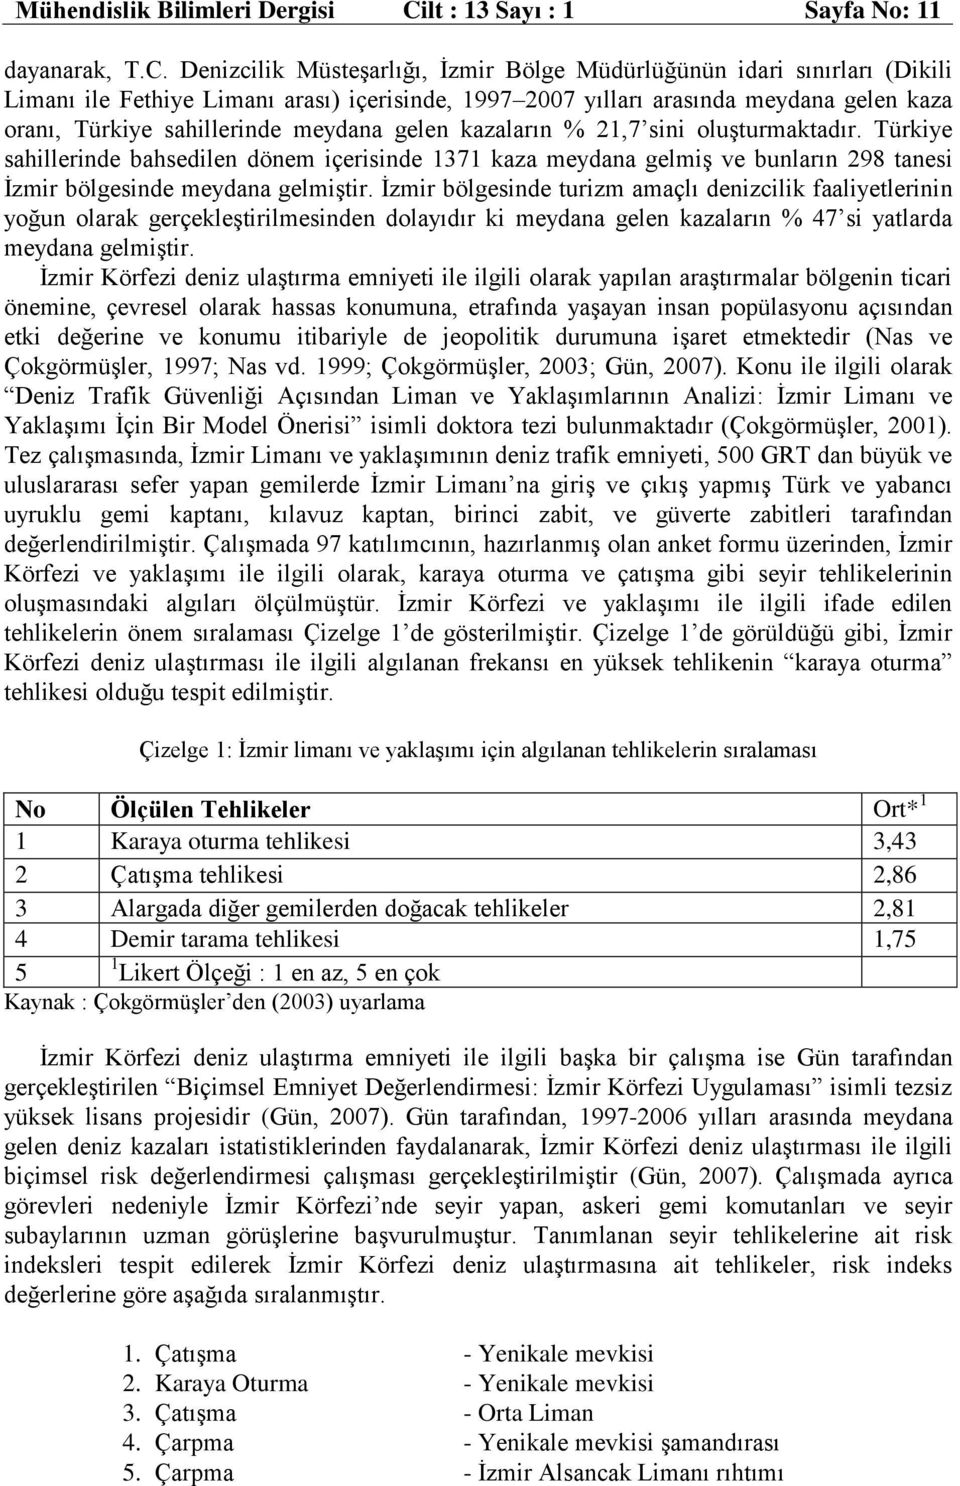 Denizcilik Müsteşarlığı, İzmir Bölge Müdürlüğünün idari sınırları (Dikili Limanı ile Fethiye Limanı arası) içerisinde, 1997 2007 yılları arasında meydana gelen kaza oranı, Türkiye sahillerinde